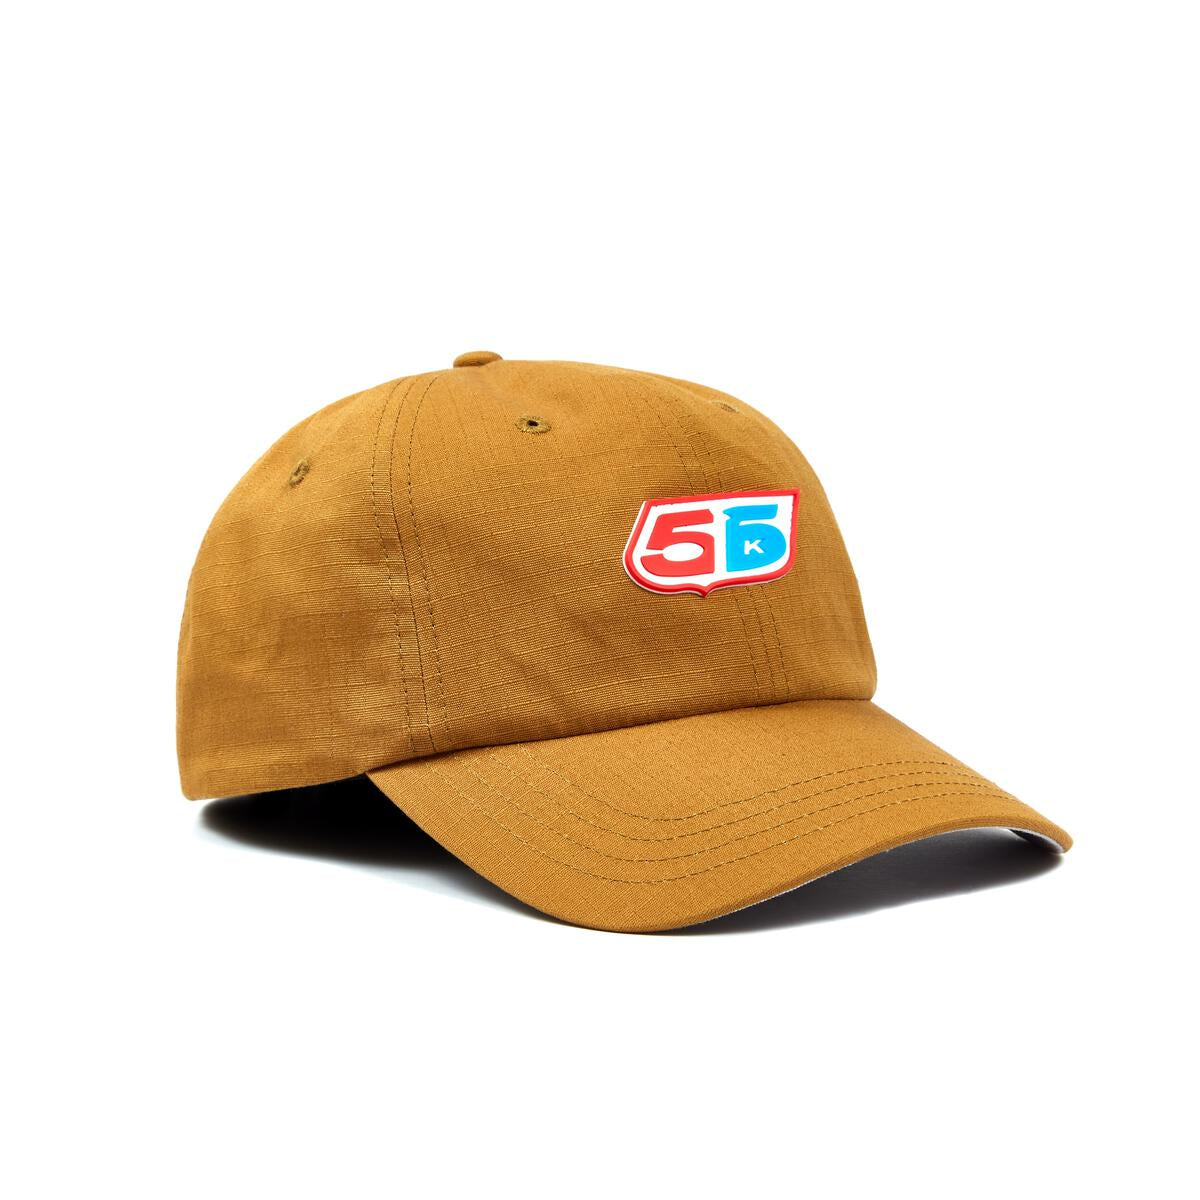 Bronze 56K Deez Hat - (Brown)